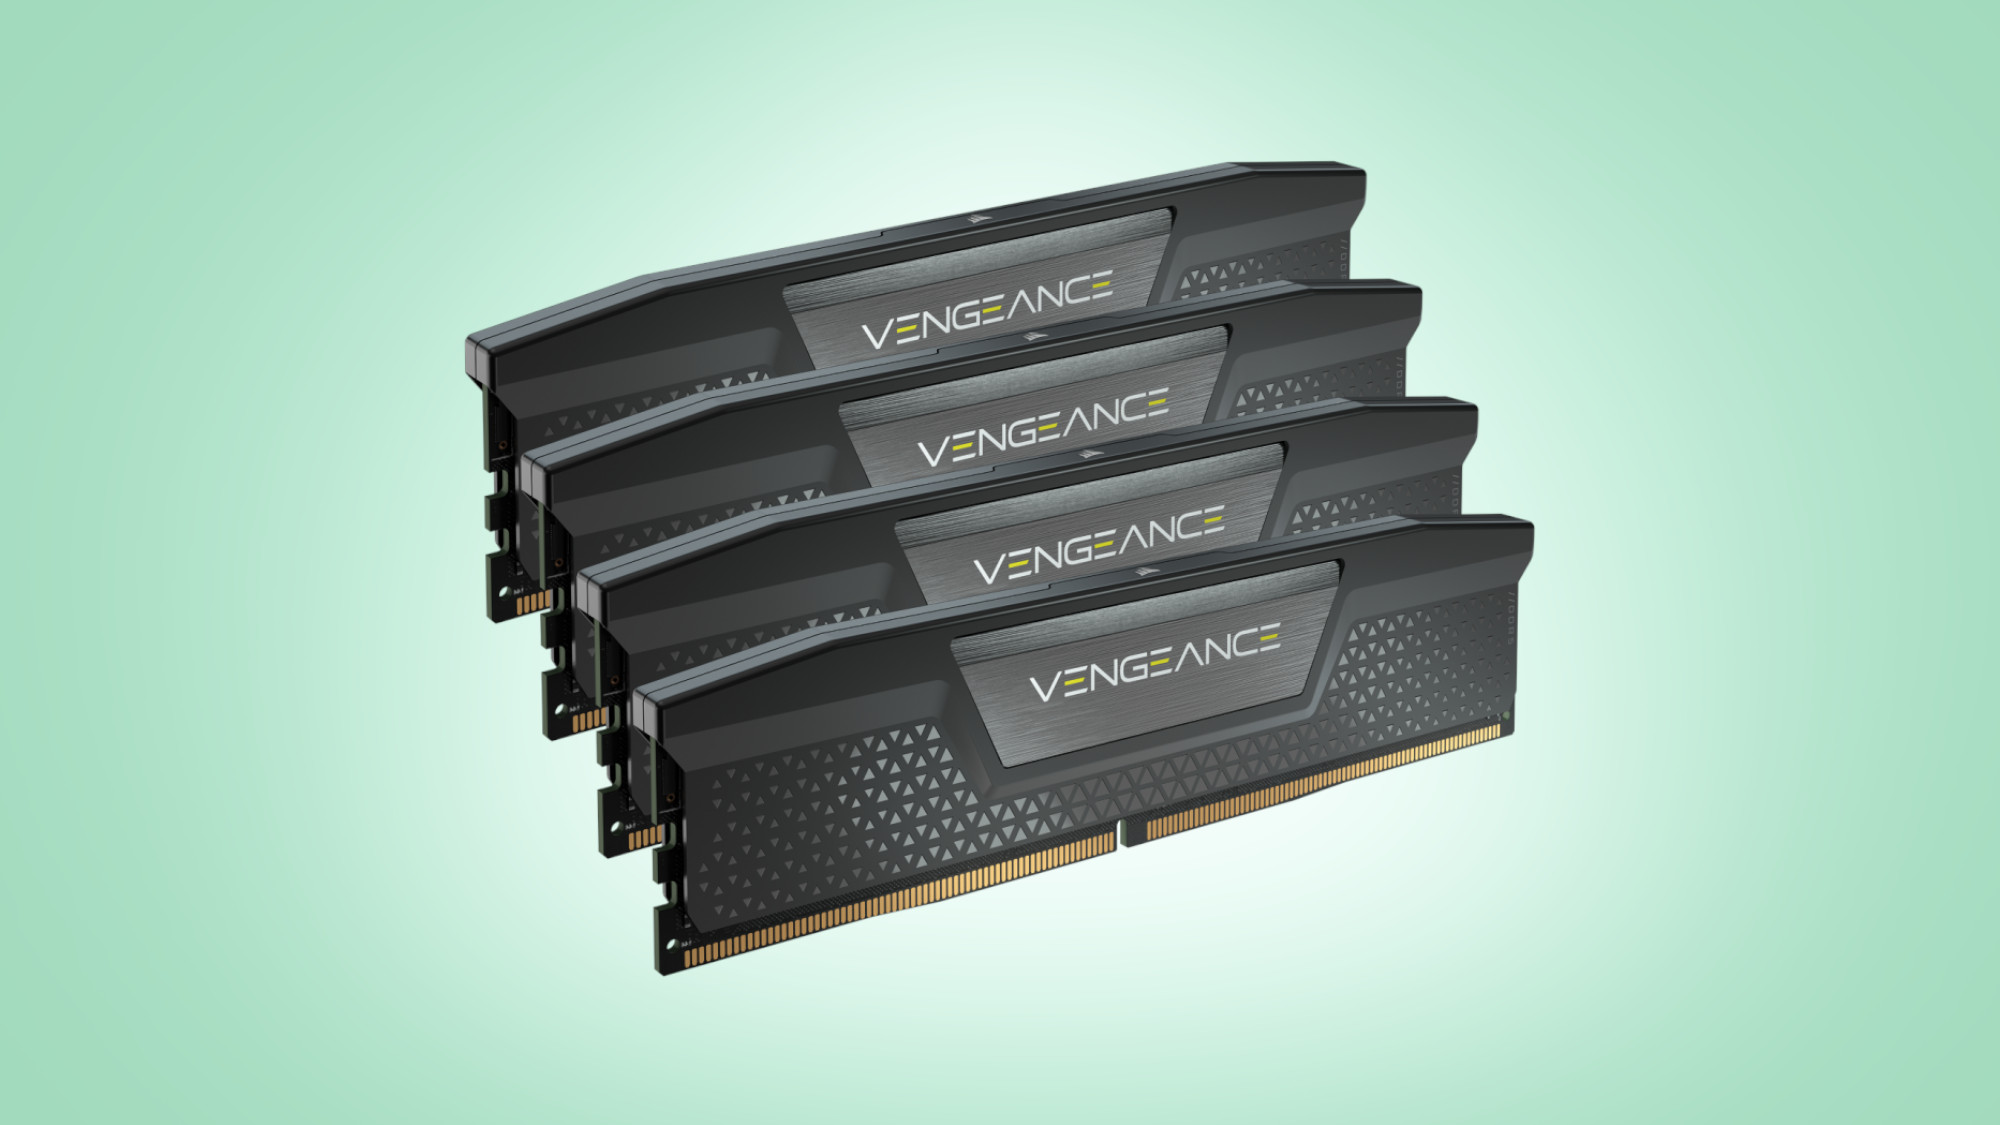 Corsair Vengeance DDR5 RAM sticks on eggshell green background